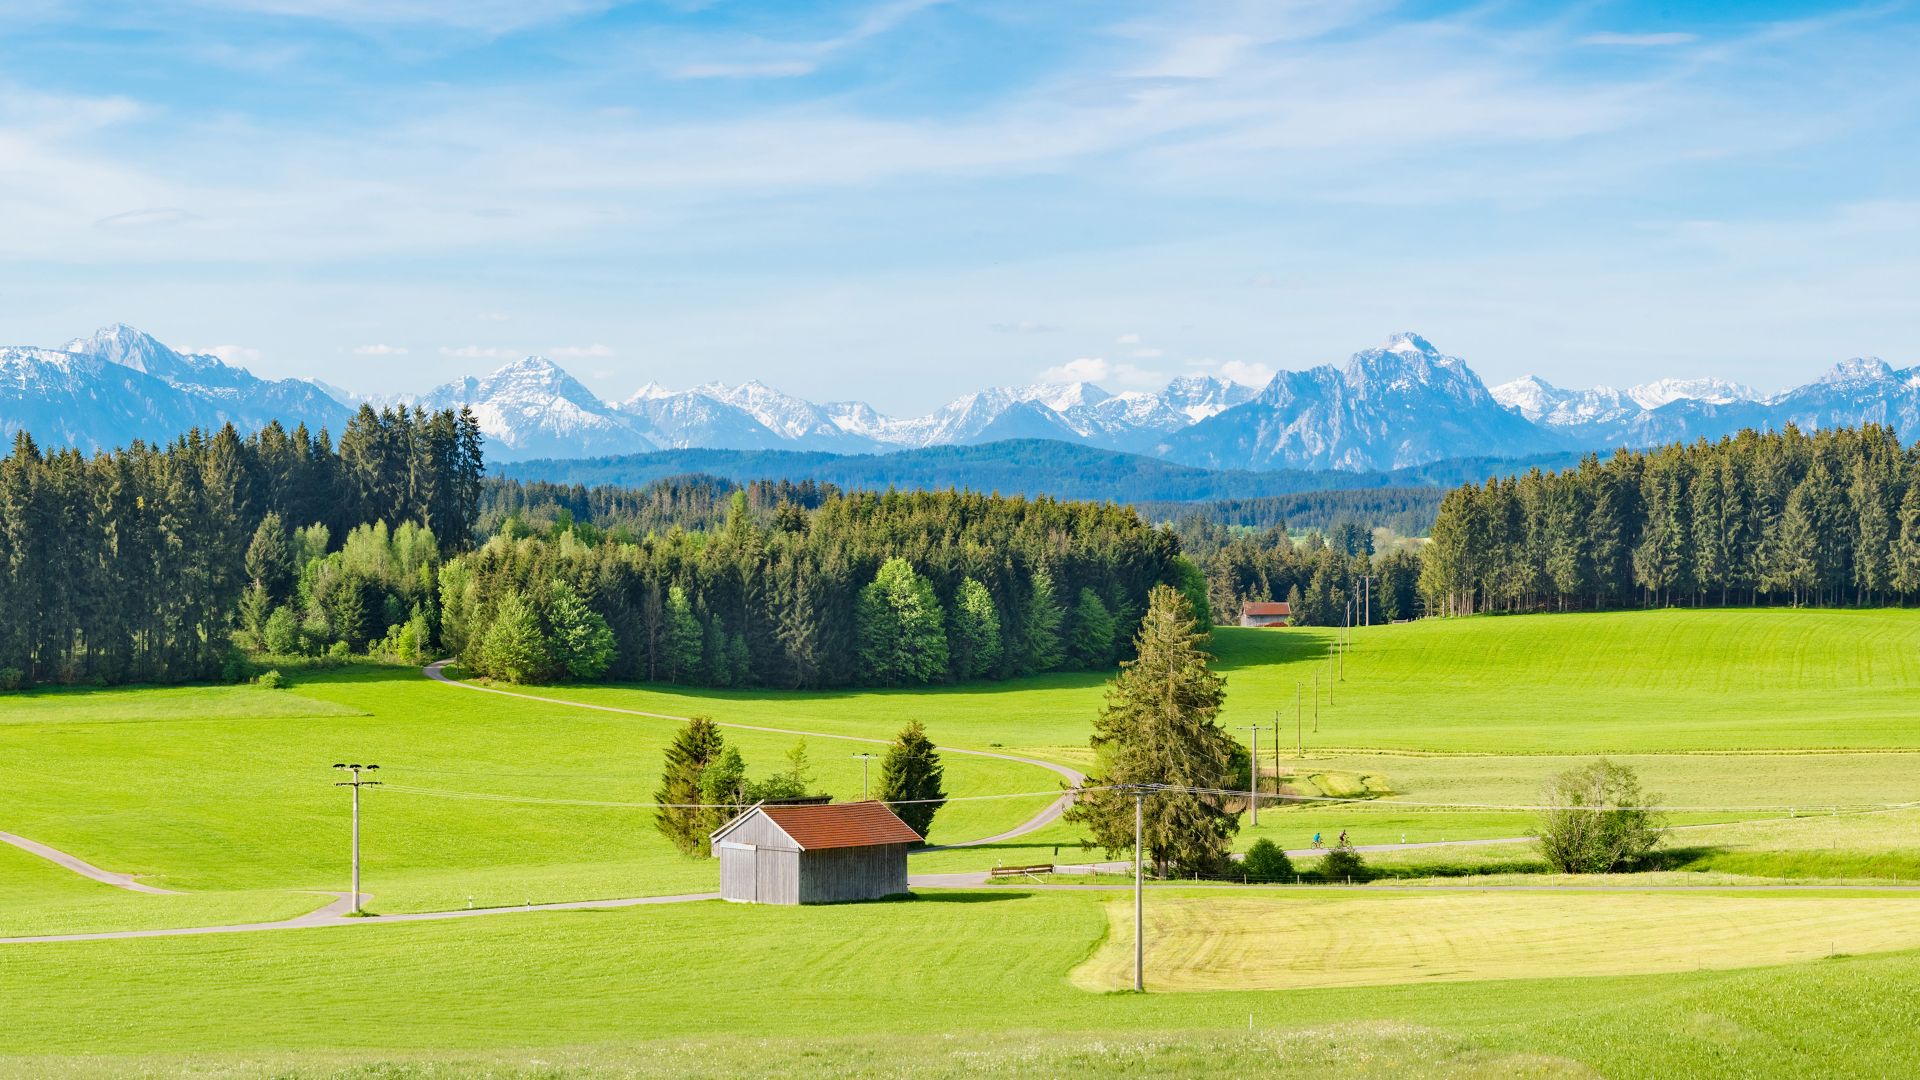 Allgäu, punased katushooned avaral rohelisel põllumaastikul ja metsal, millel on dramaatiline lumega kaetud mägede taust horisondil